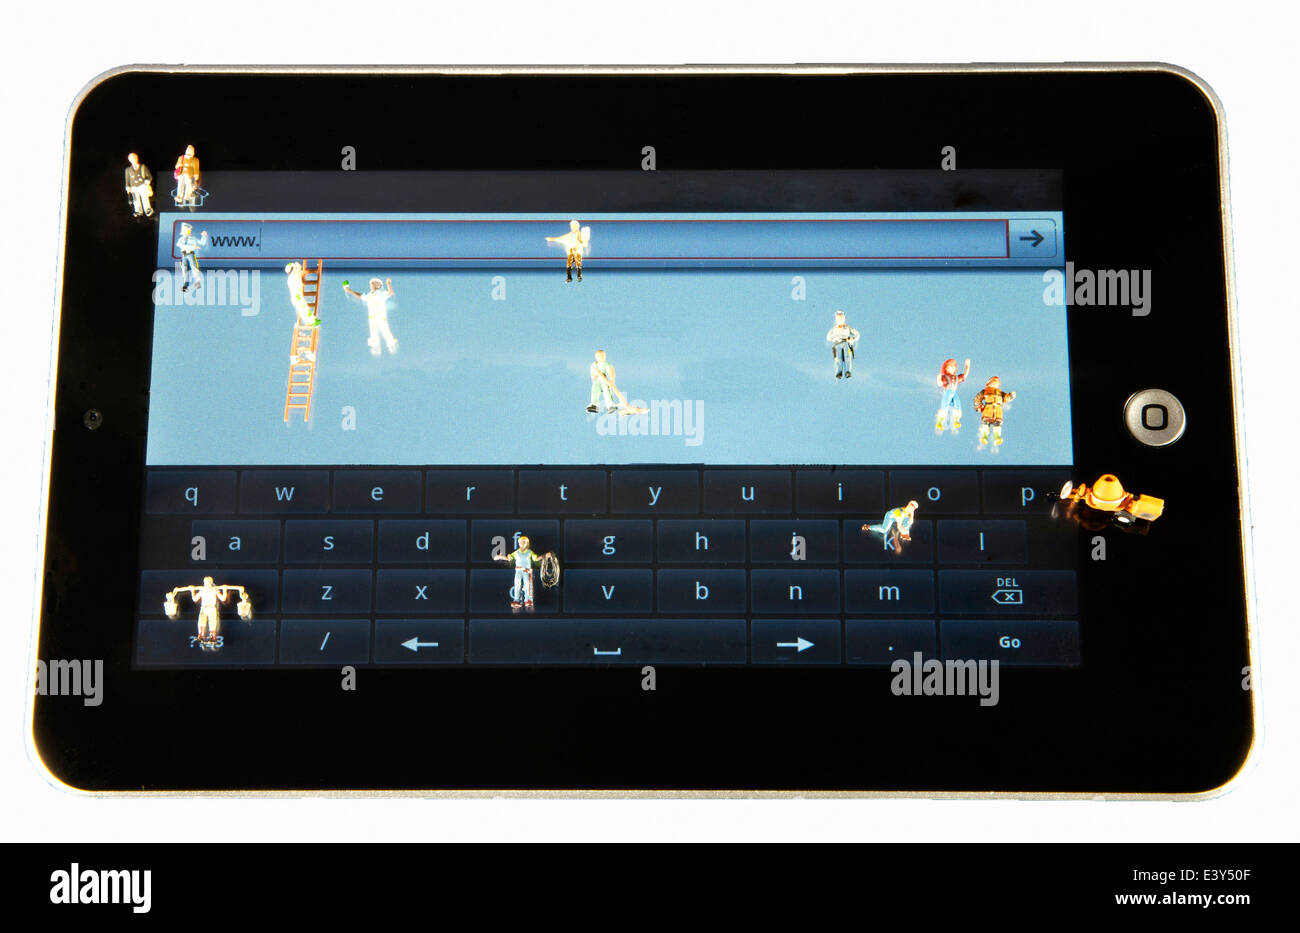 Les travailleurs miniature sur un écran de tablette imitant les tâches requises pour construire un site web Banque D'Images